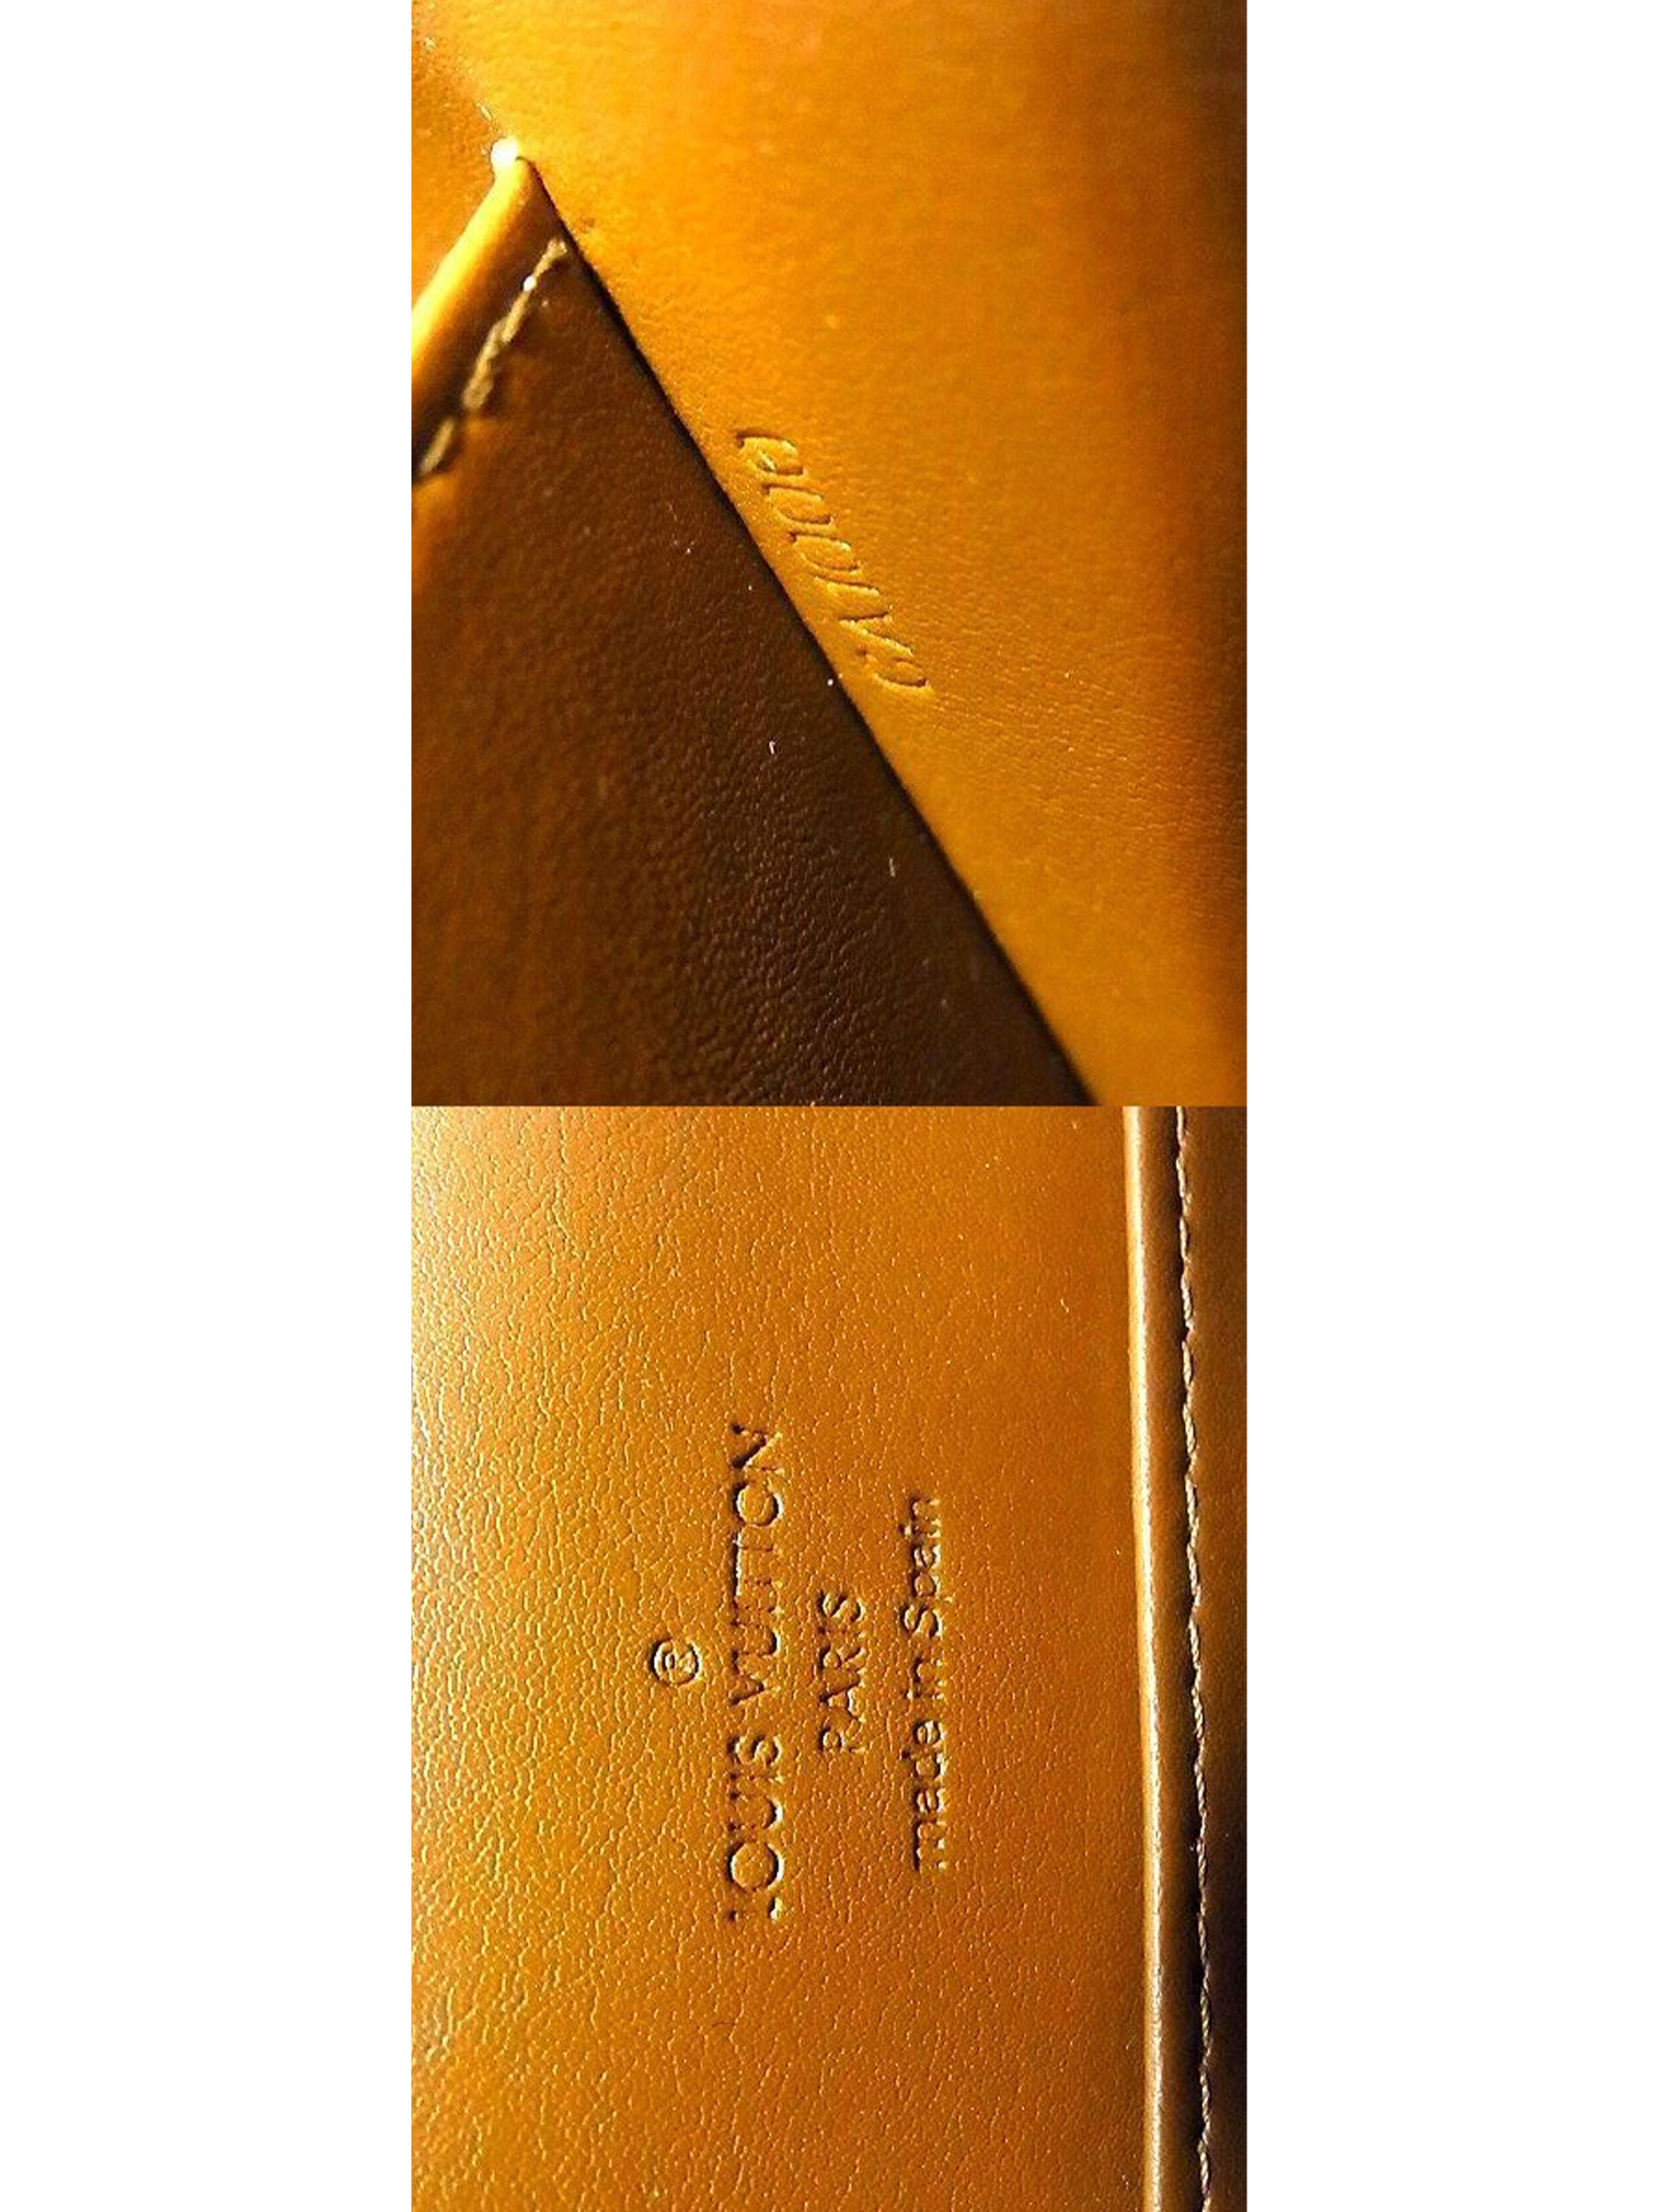 Louis Vuitton 2000s Brown Vernis Shoulder Bag